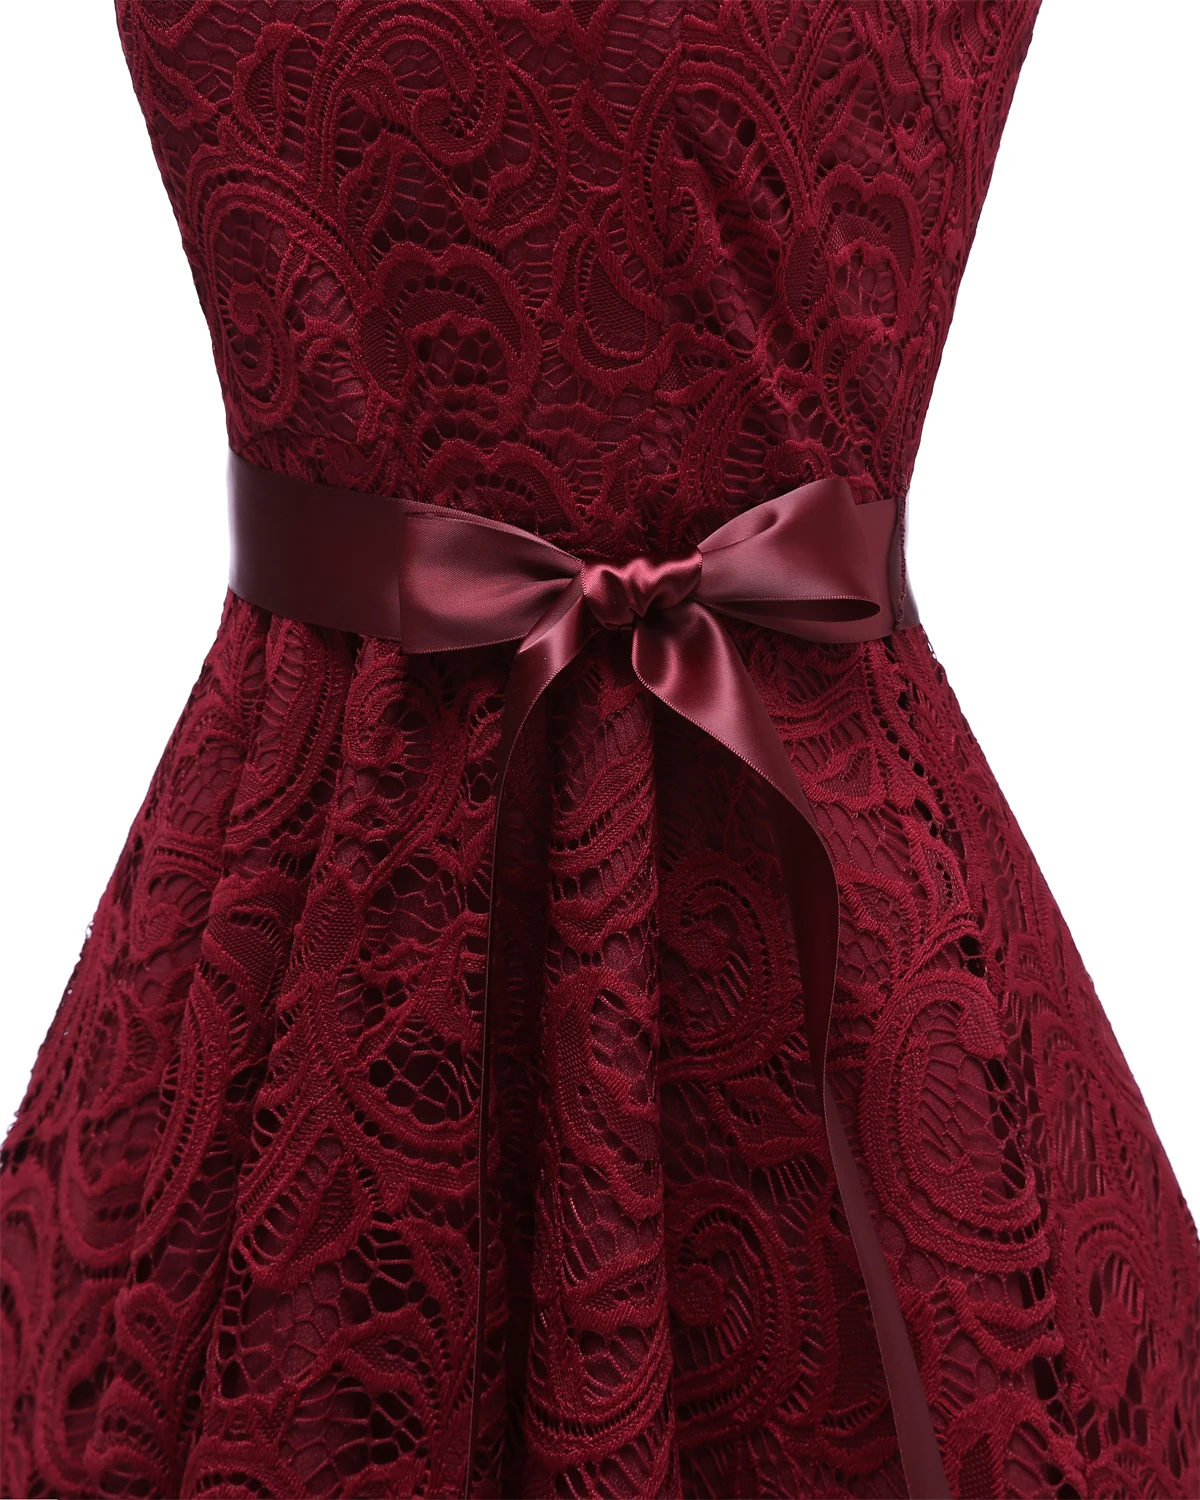 Элегантное коктейльное платье с кружевом без рукавов по колено платье бальные платья, торжественные платья, пикантный, для вечеринки платье темно-синего, розового и серого цветов, винно-красного, абрикосового цветов